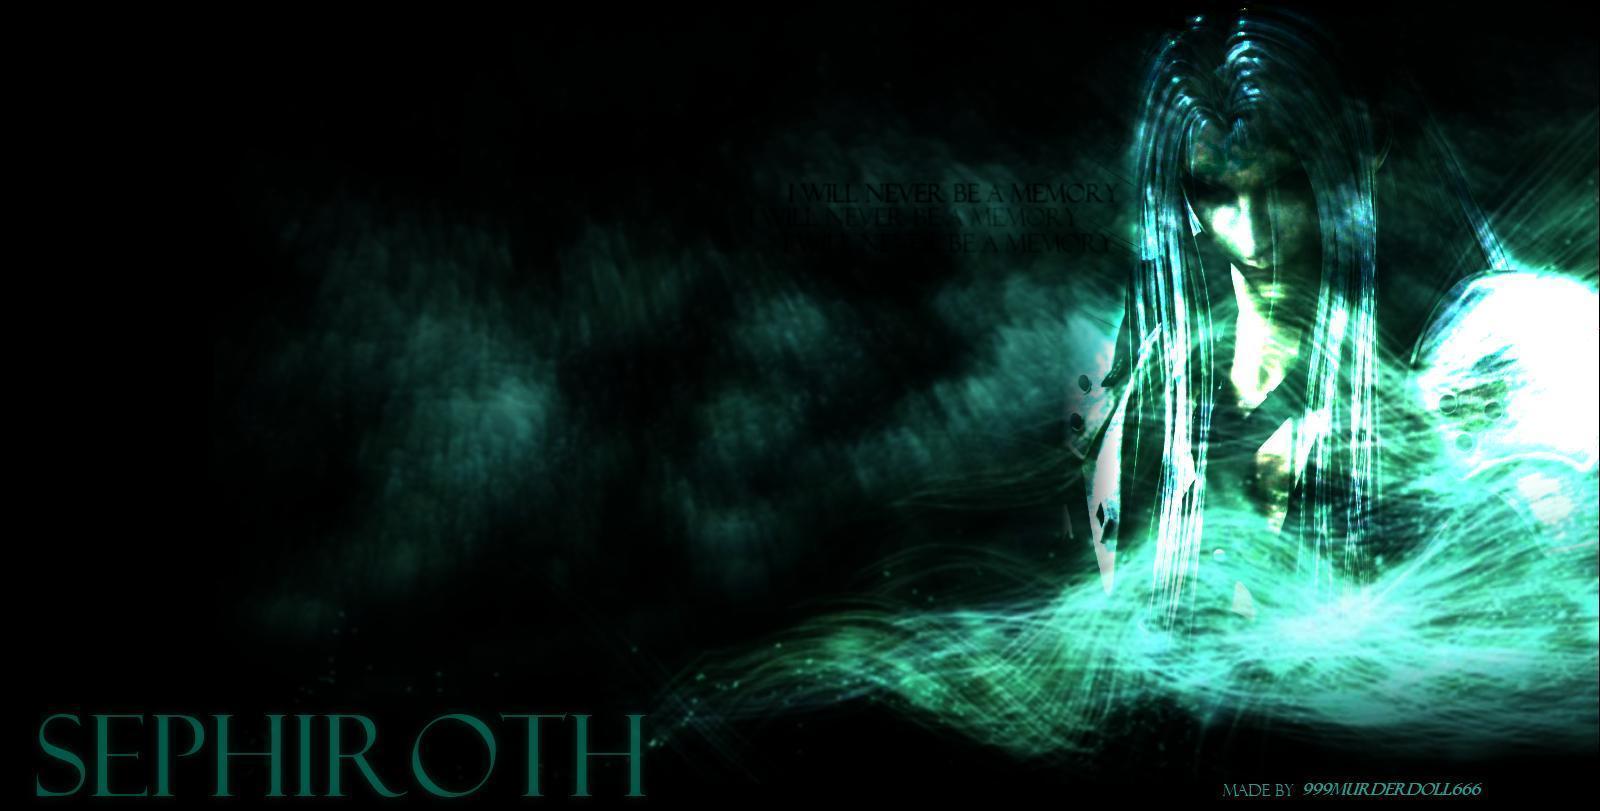 Sephiroth Wallpaper 12 264840 Image HD Wallpaper. Wallfoy.com